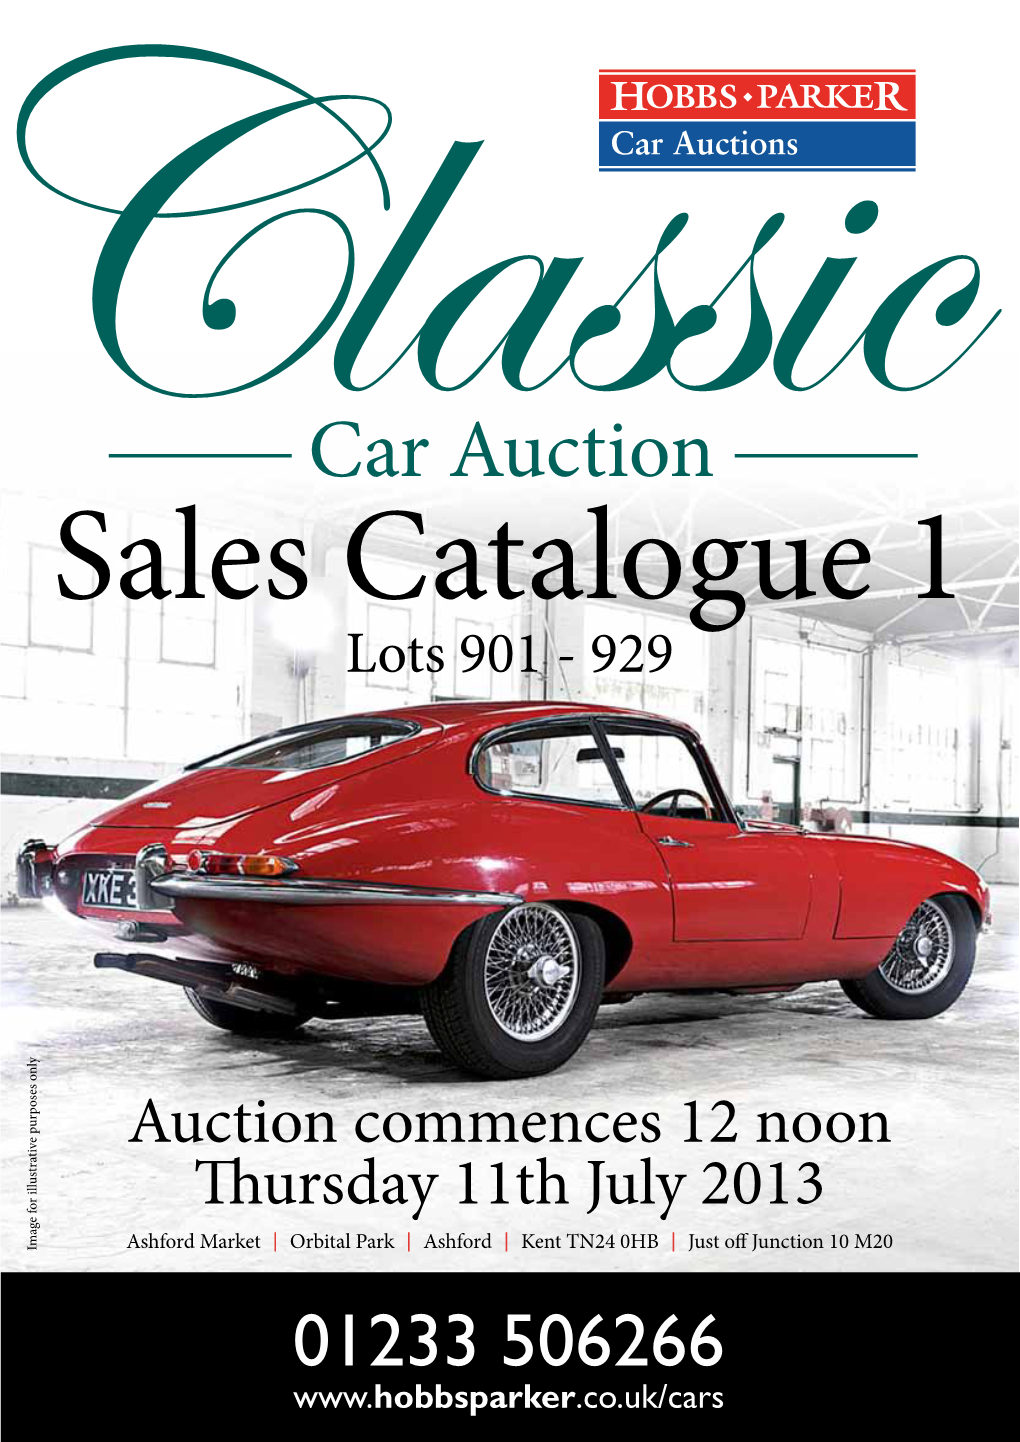 Car Auction Sales Catalogue 1 Lots 901 - 929